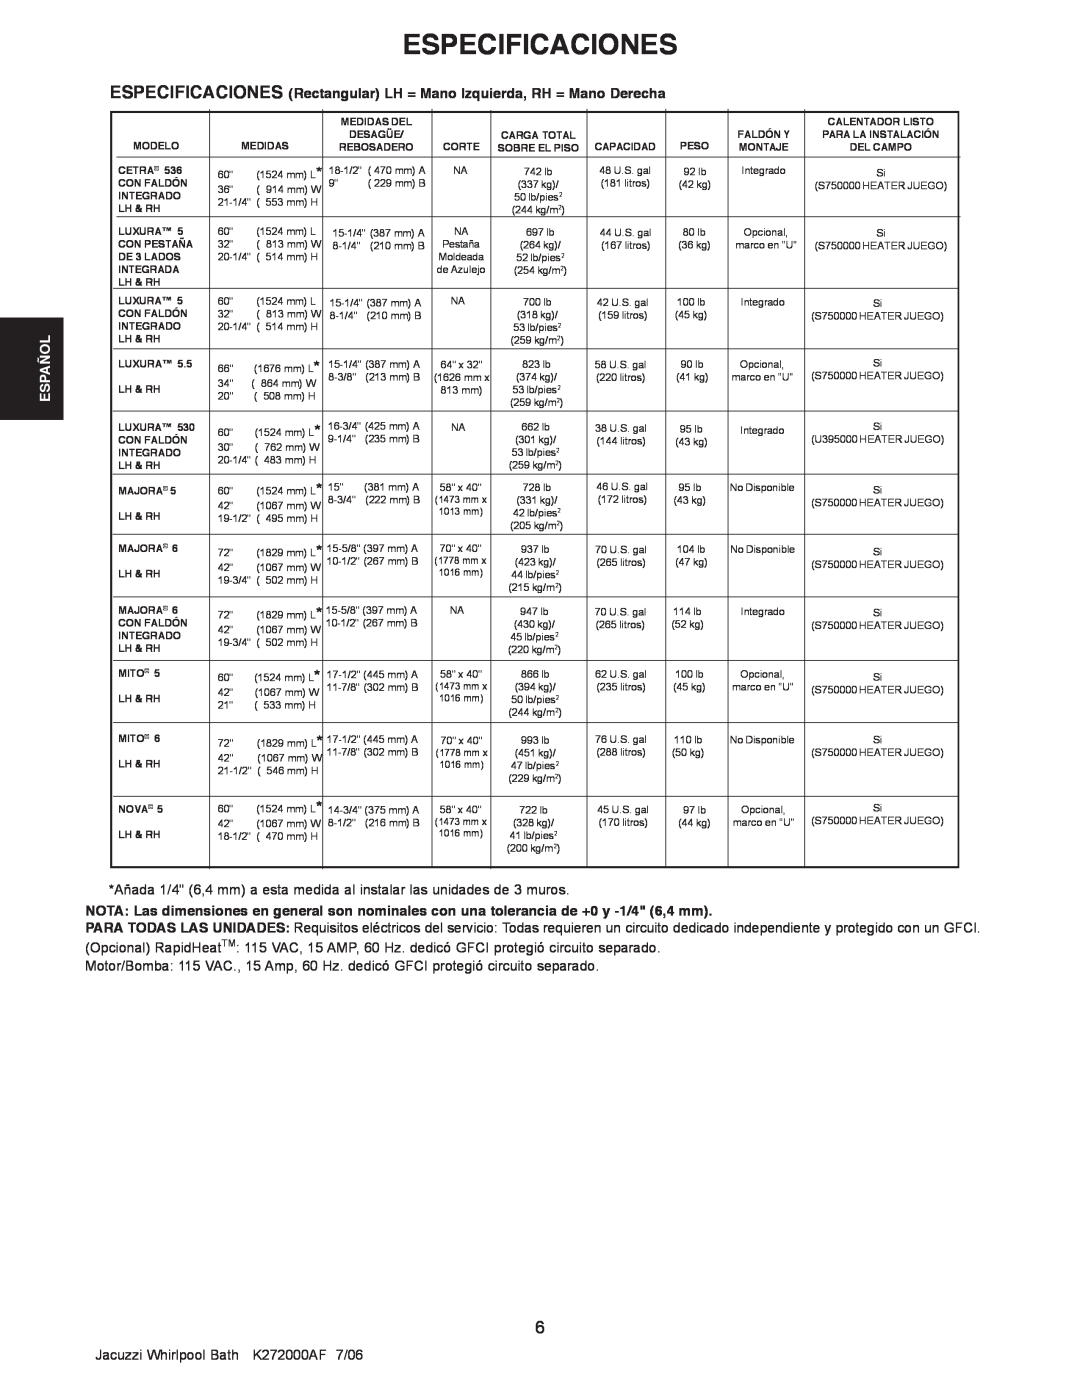 Jacuzzi K272000AF 7/06 Especificaciones, Español, ESPECIFICACIONES Rectangular LH = Mano Izquierda, RH = Mano Derecha 